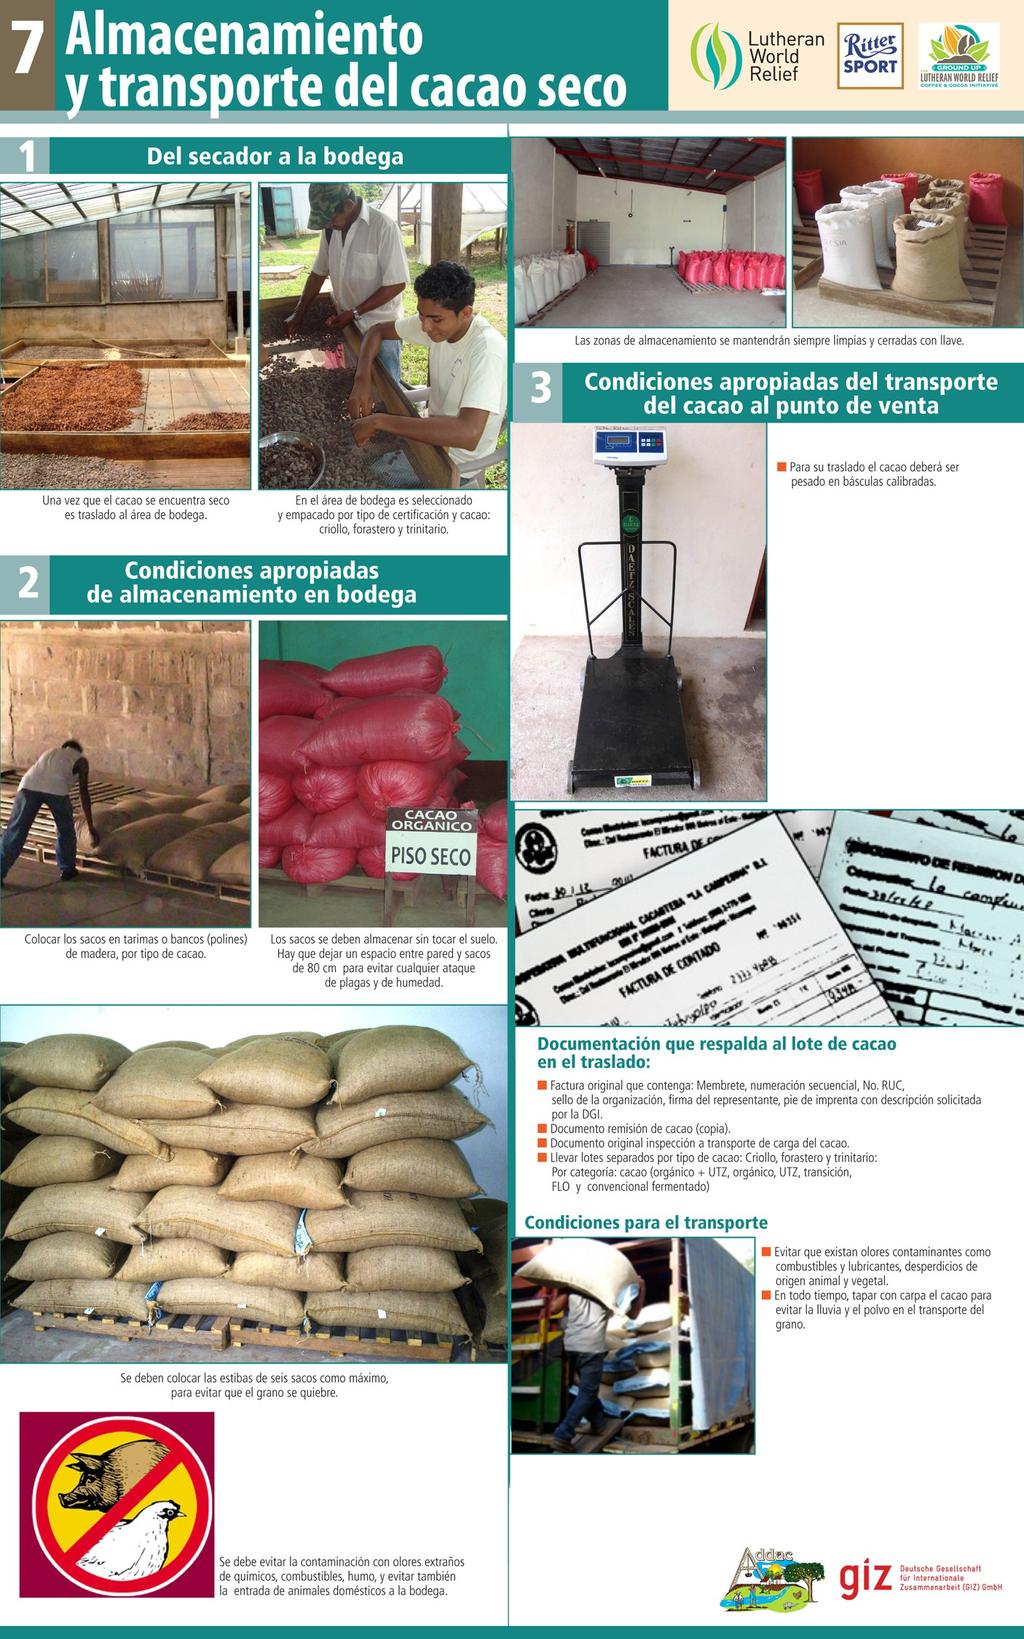 4. Normas de calidad y trazabilidad Establecer normas de muestreo y control de calidad para cacao exportado,